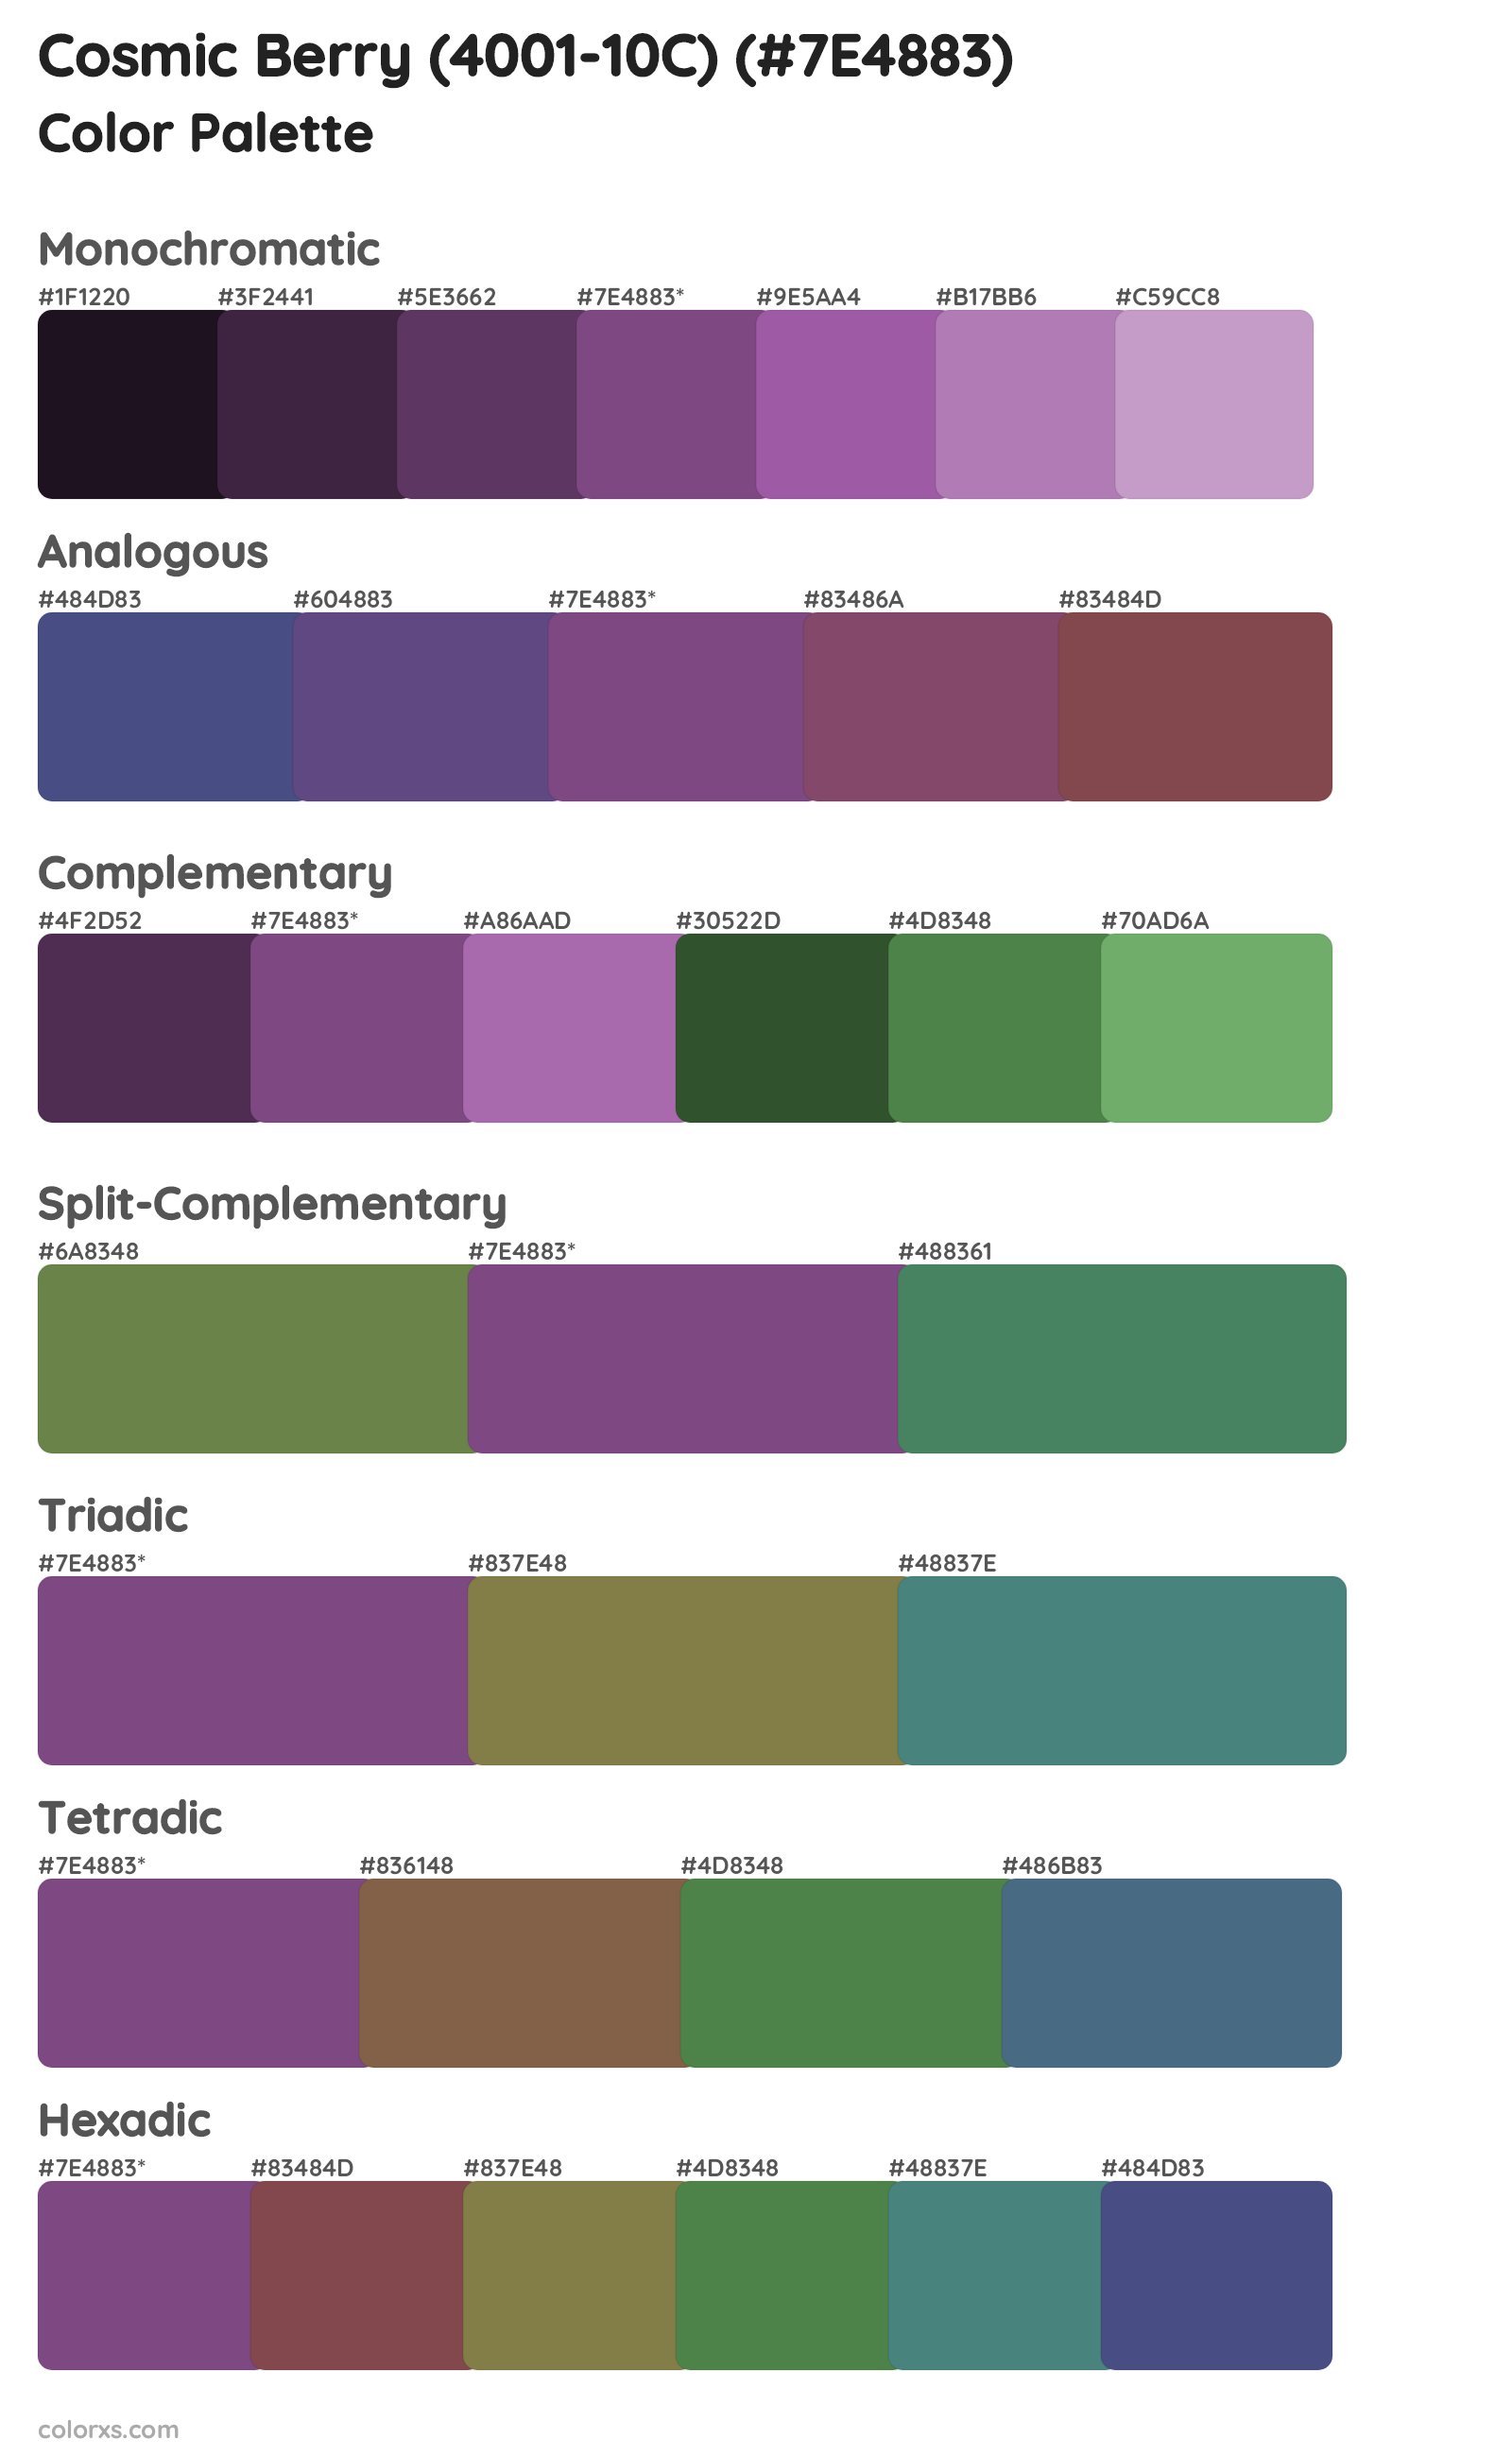 Cosmic Berry (4001-10C) Color Scheme Palettes